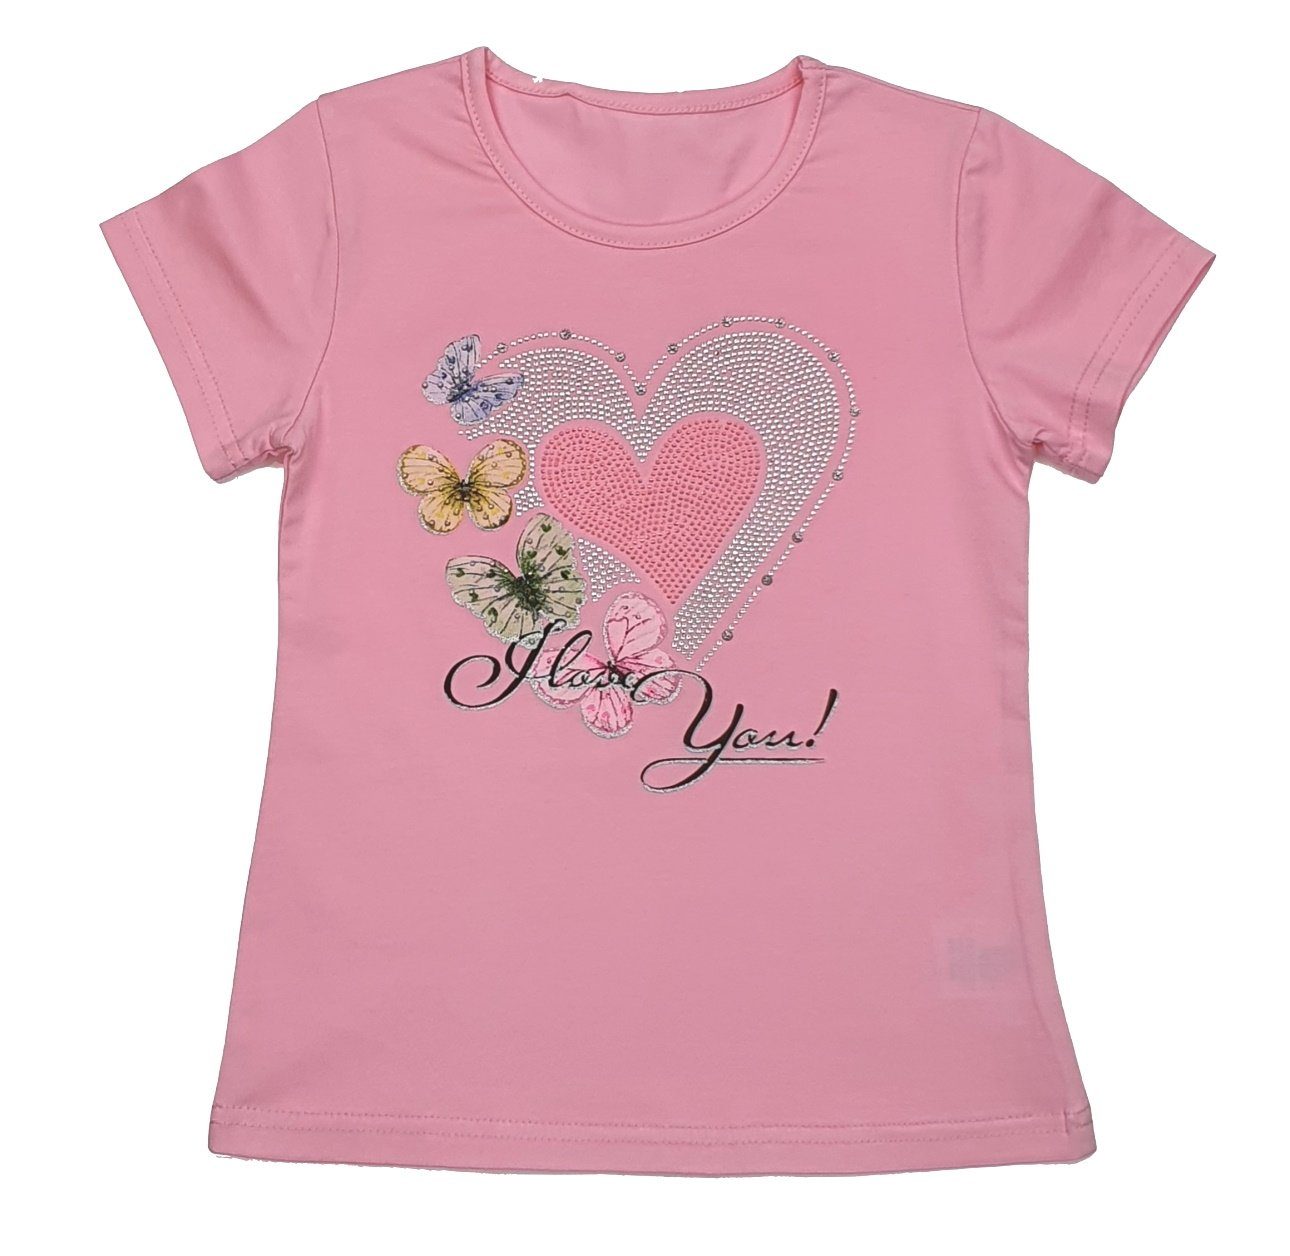 Girls Fashion T-Shirt Mädchen T-Shirt Sommer Shirt MS87 Rosa